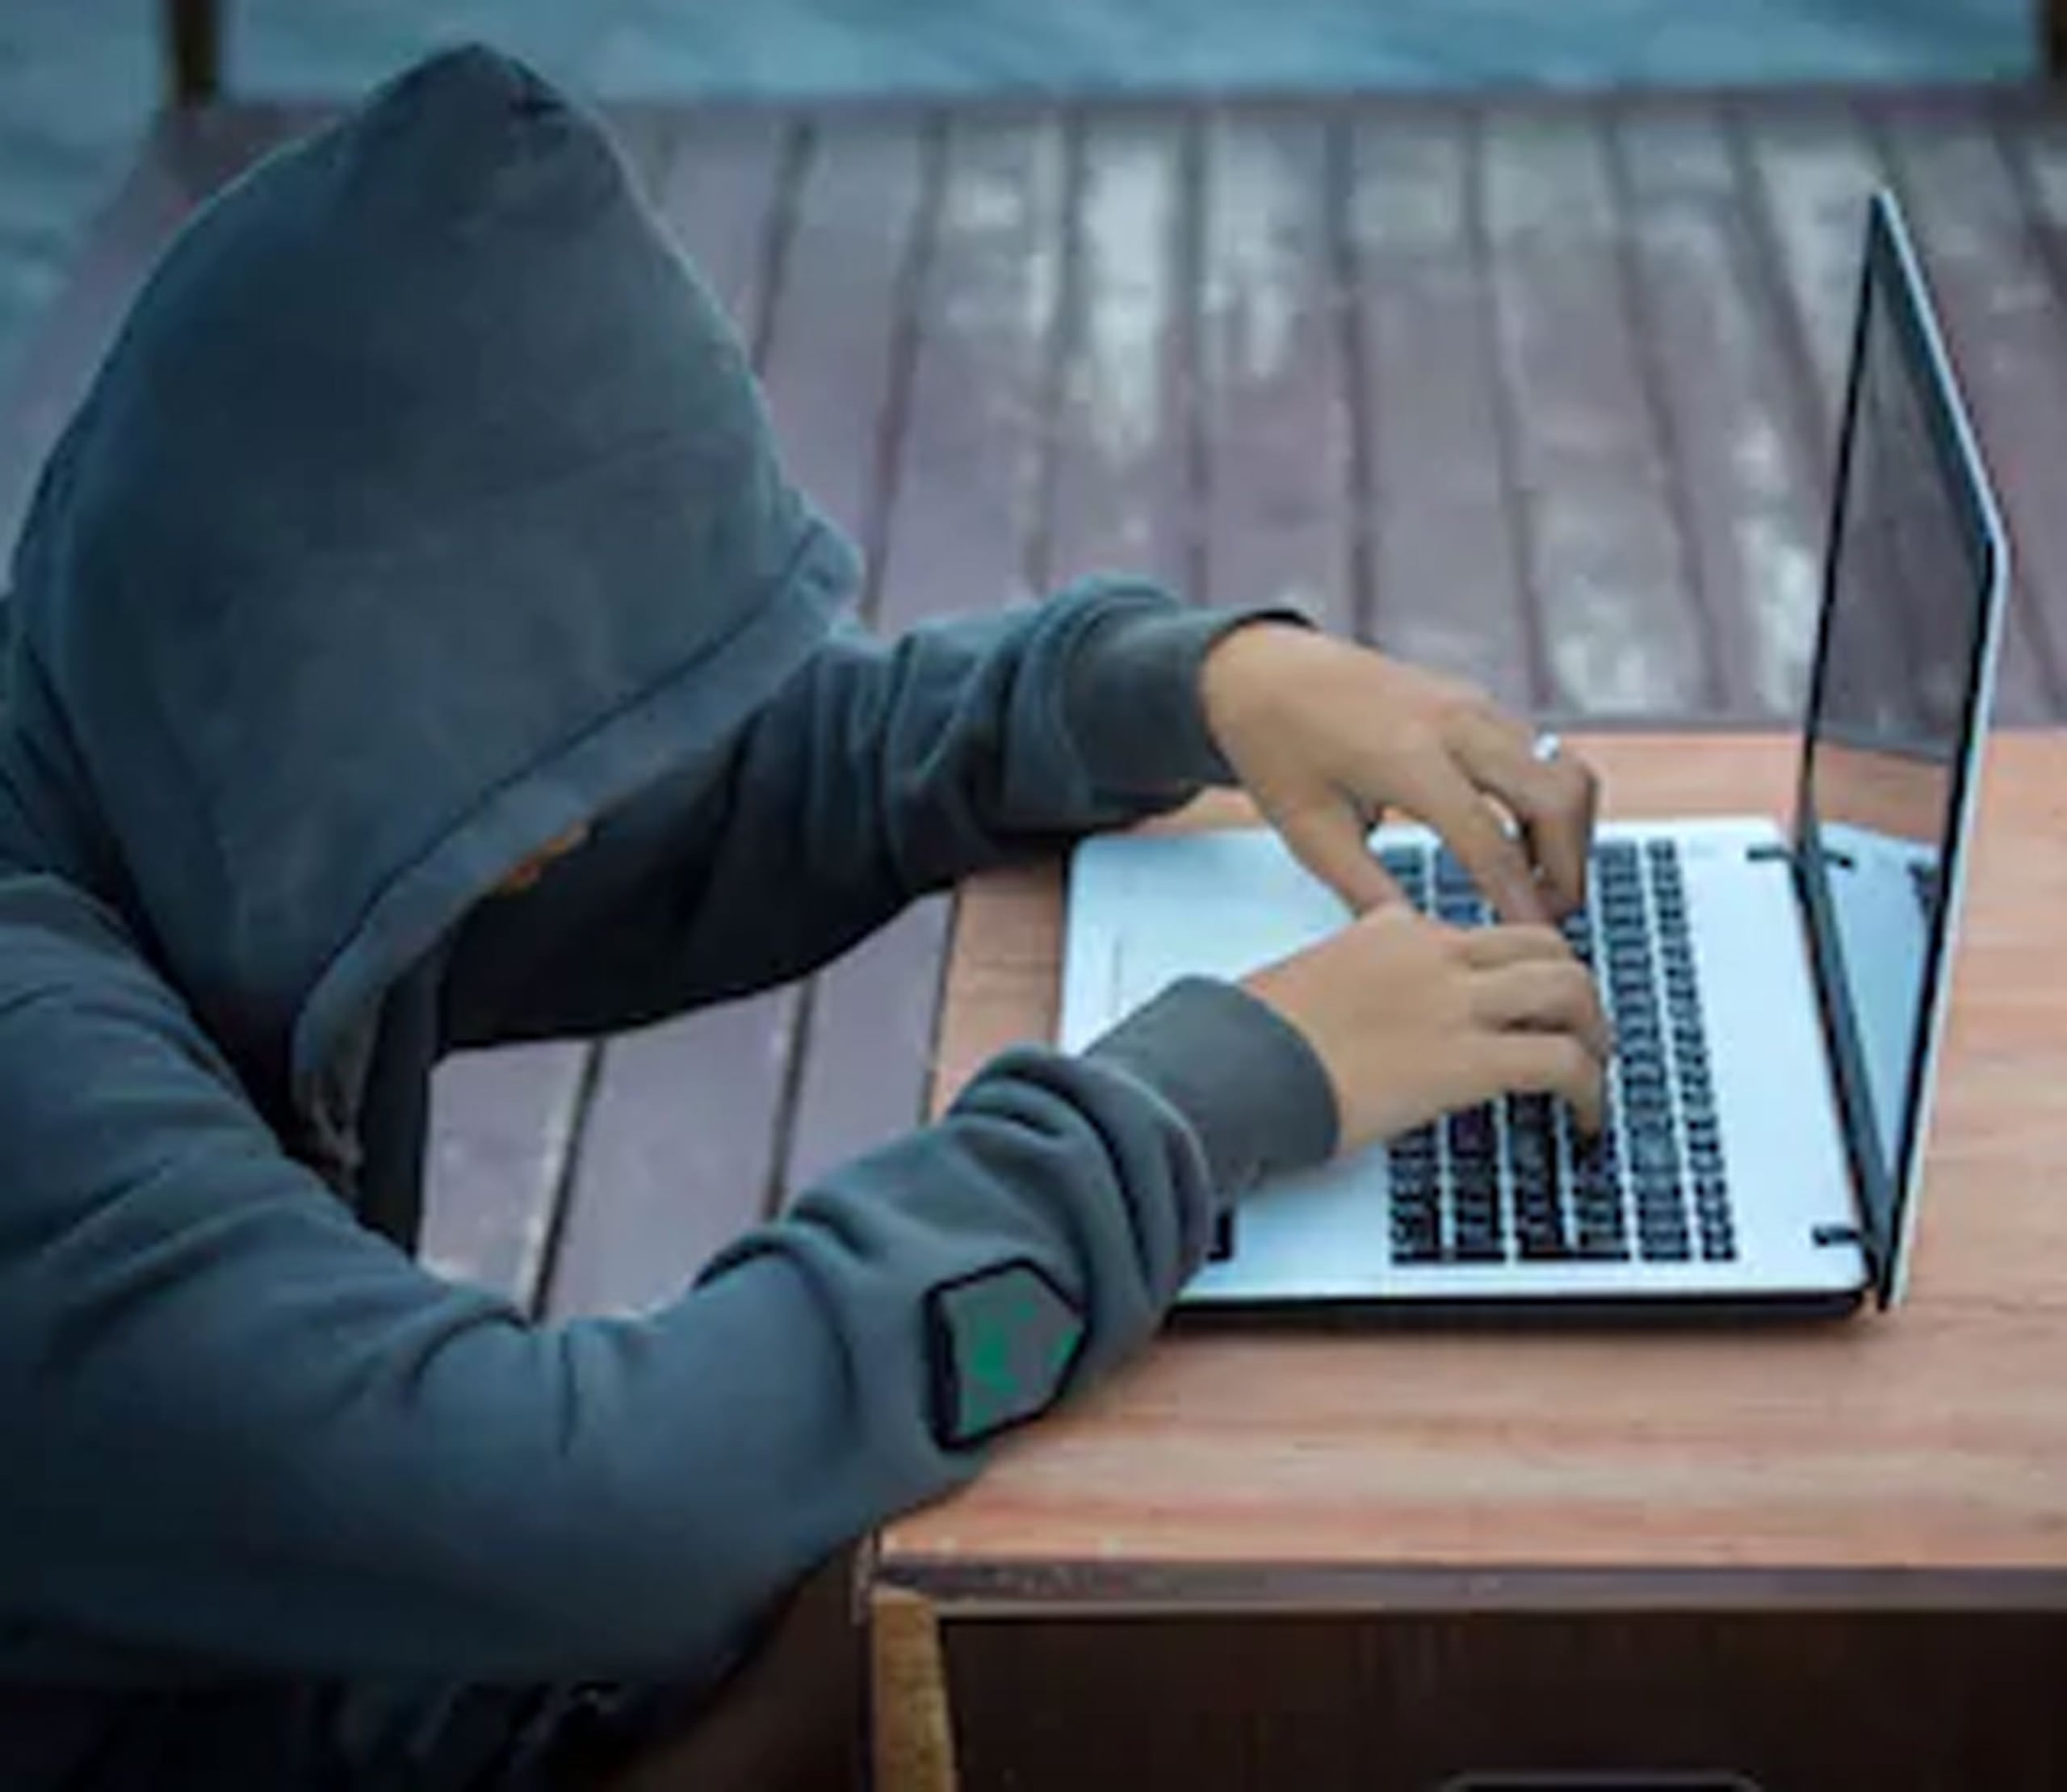 El sistema de seguridad de ASG detectó el intento de hackeo. (Shutterstock)